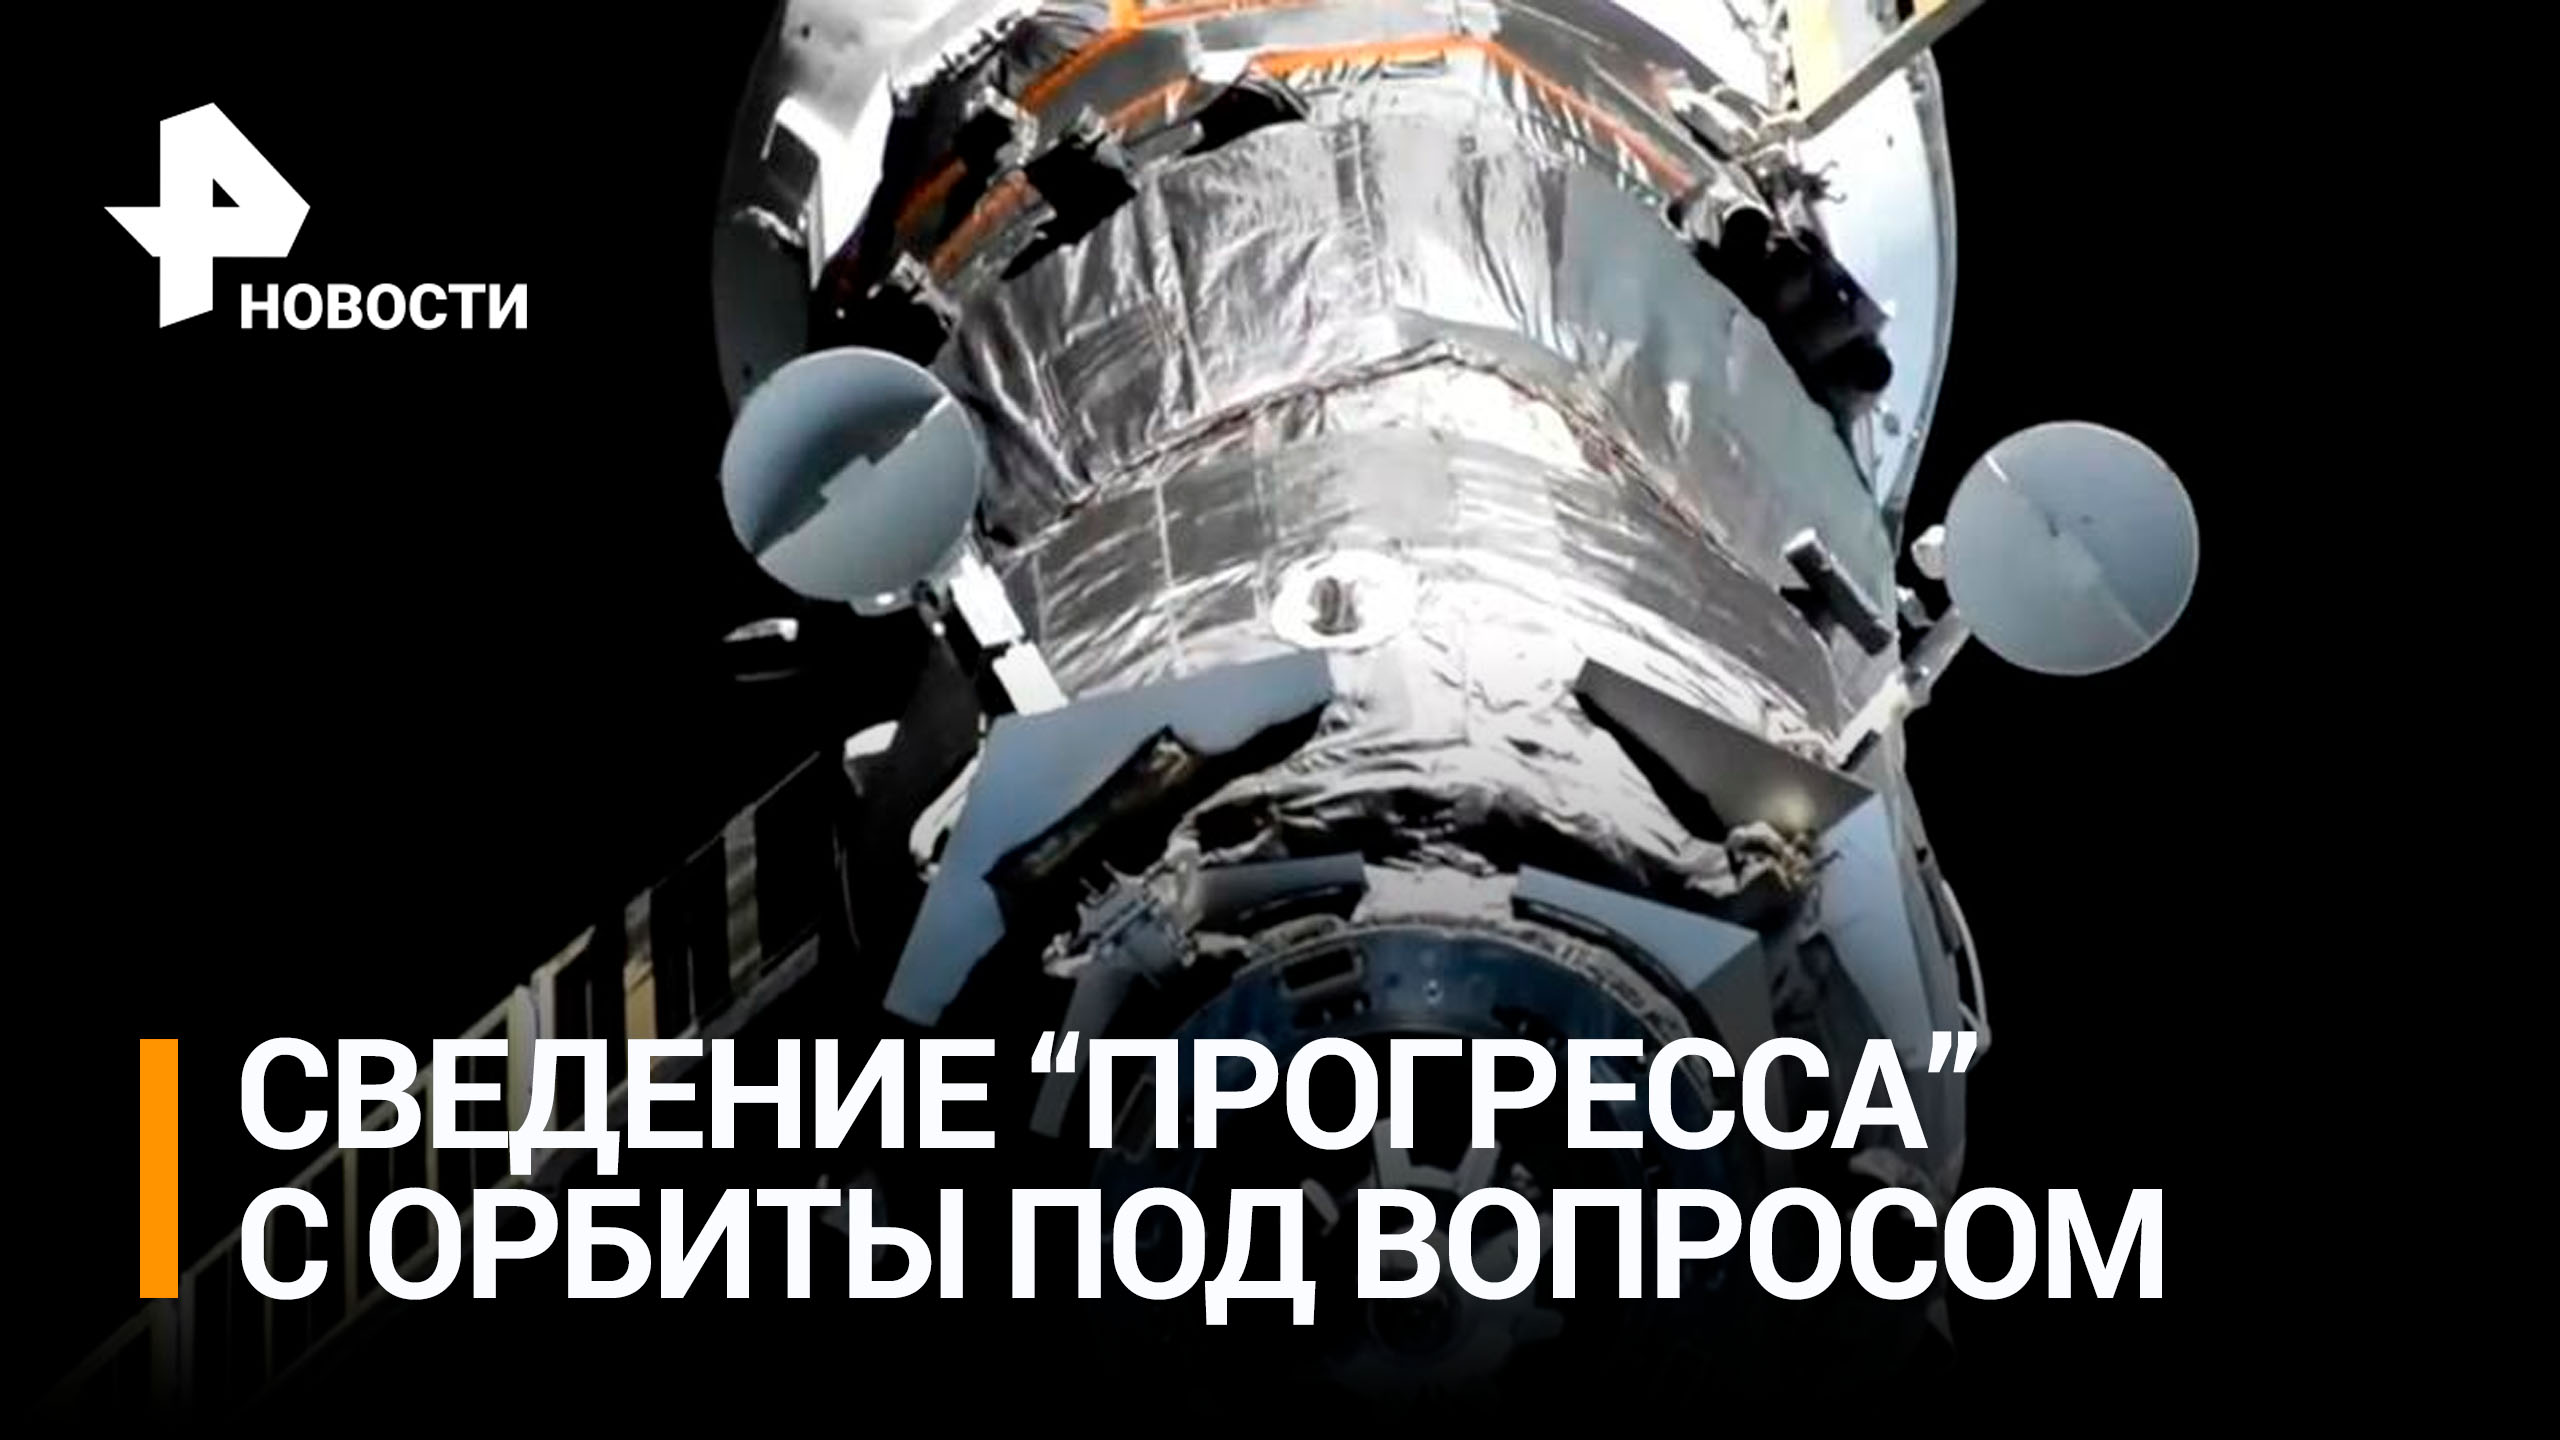 Сведение "Прогресса" с орбиты отложили, не обнаружив на нем видимых повреждений / РЕН Новости